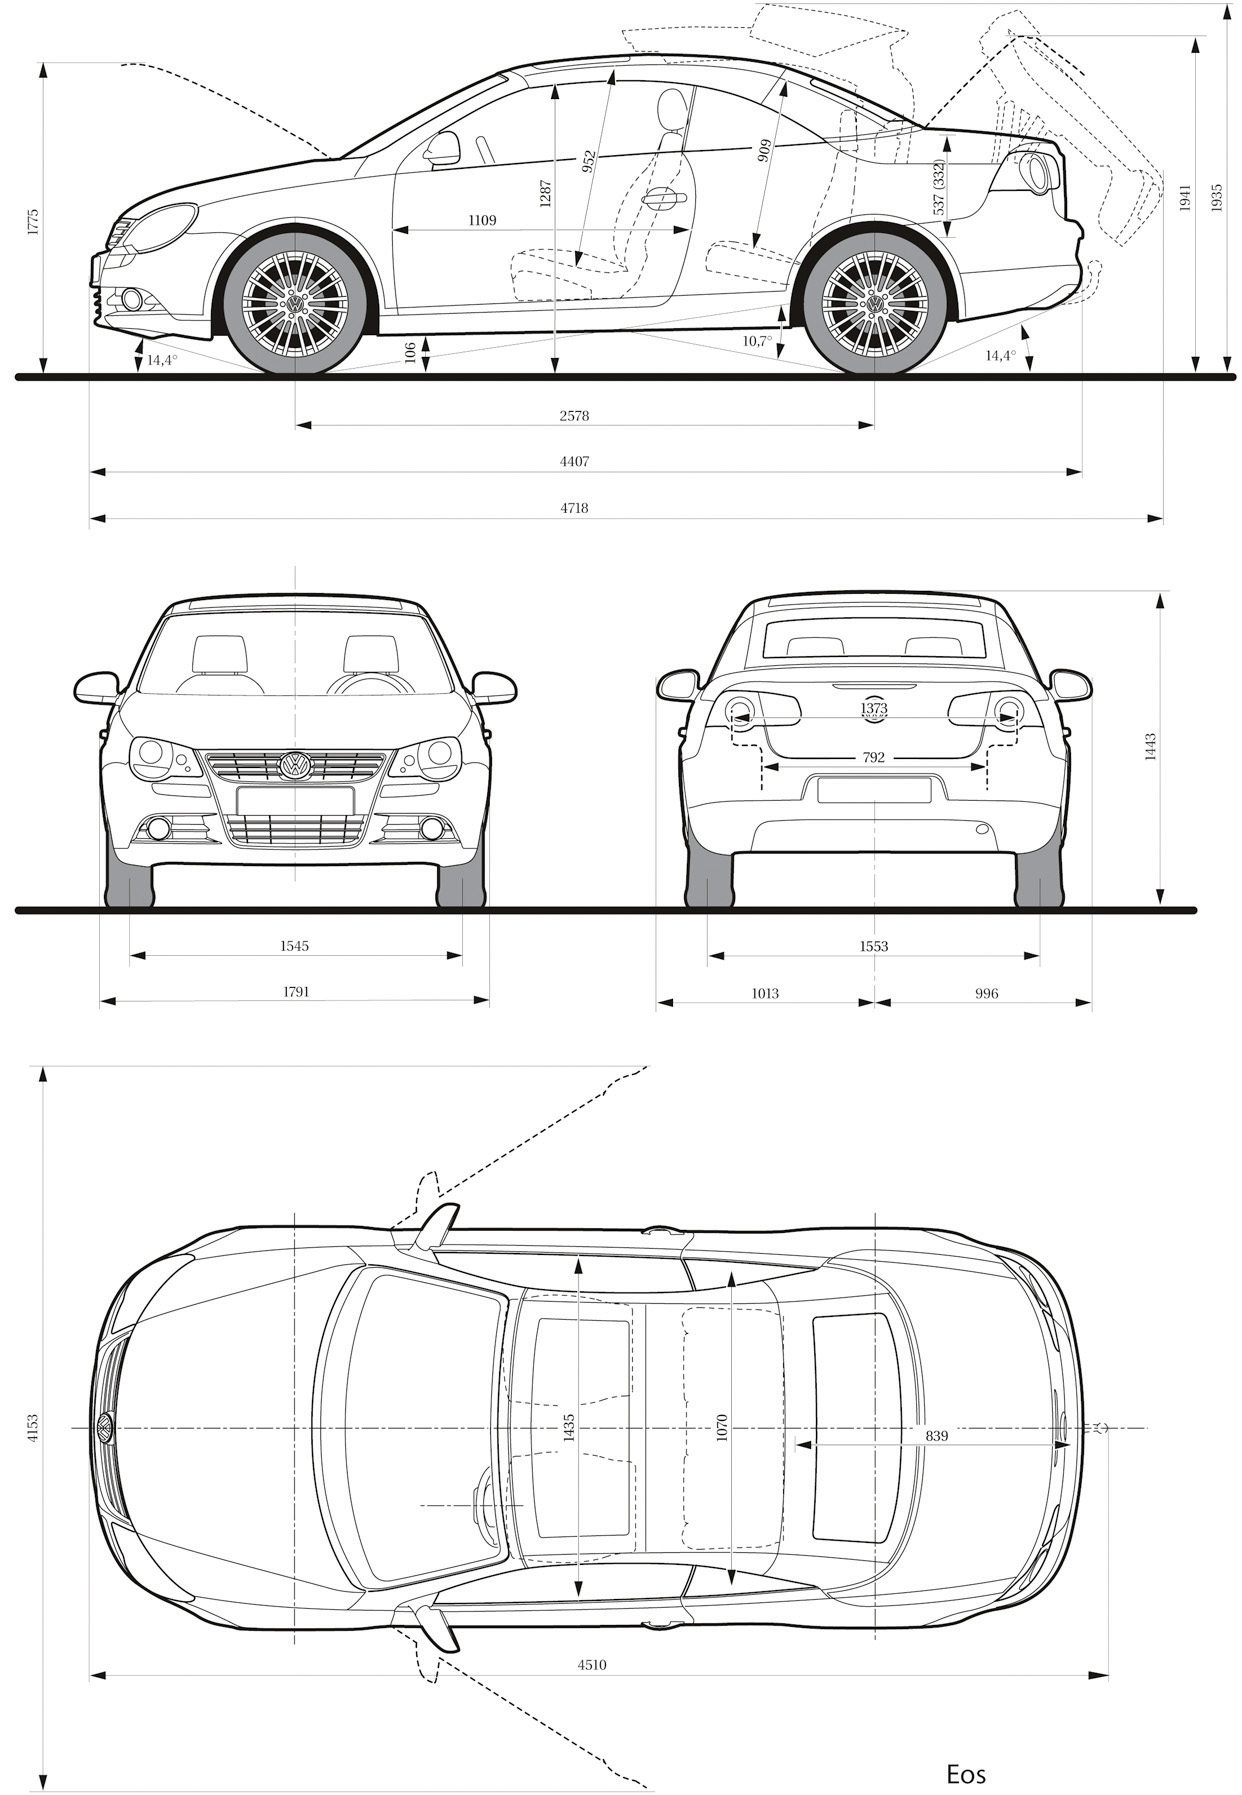 Volkswagen Eos blueprint